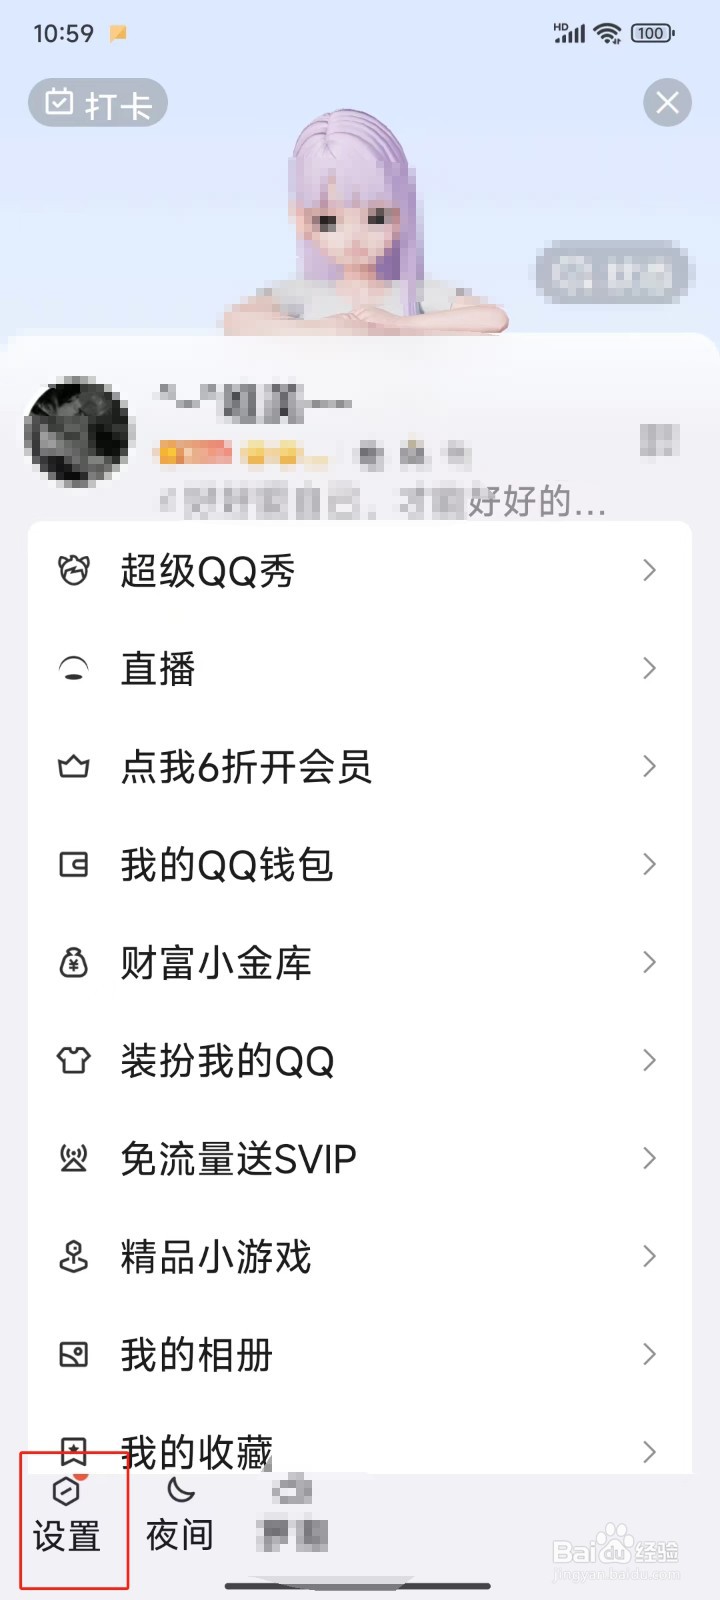 怎样关闭超级QQ秀的消息通知